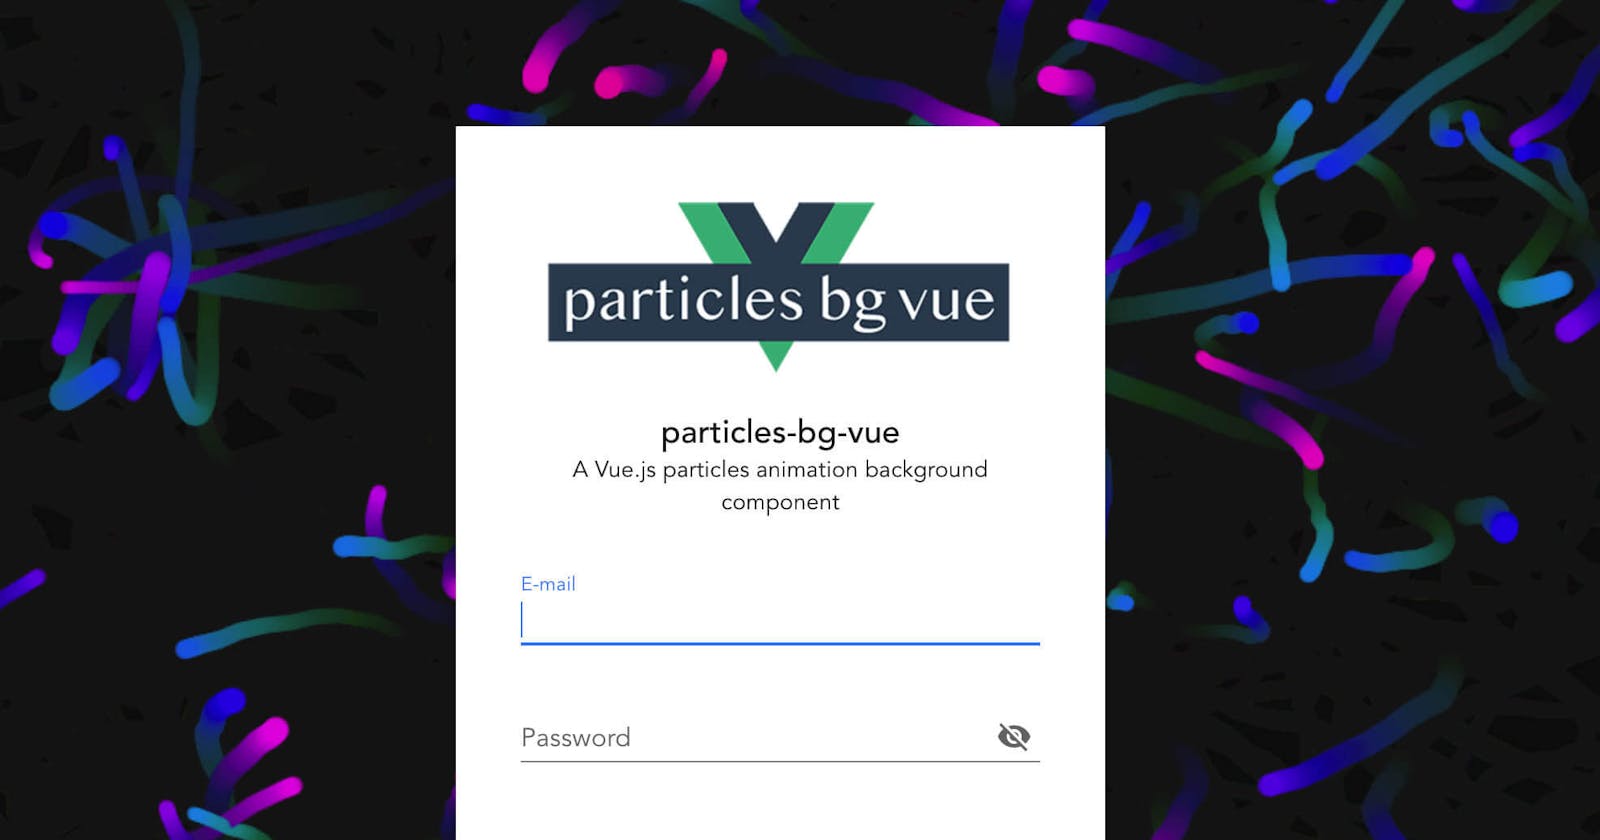 A vue.js particles animation background component